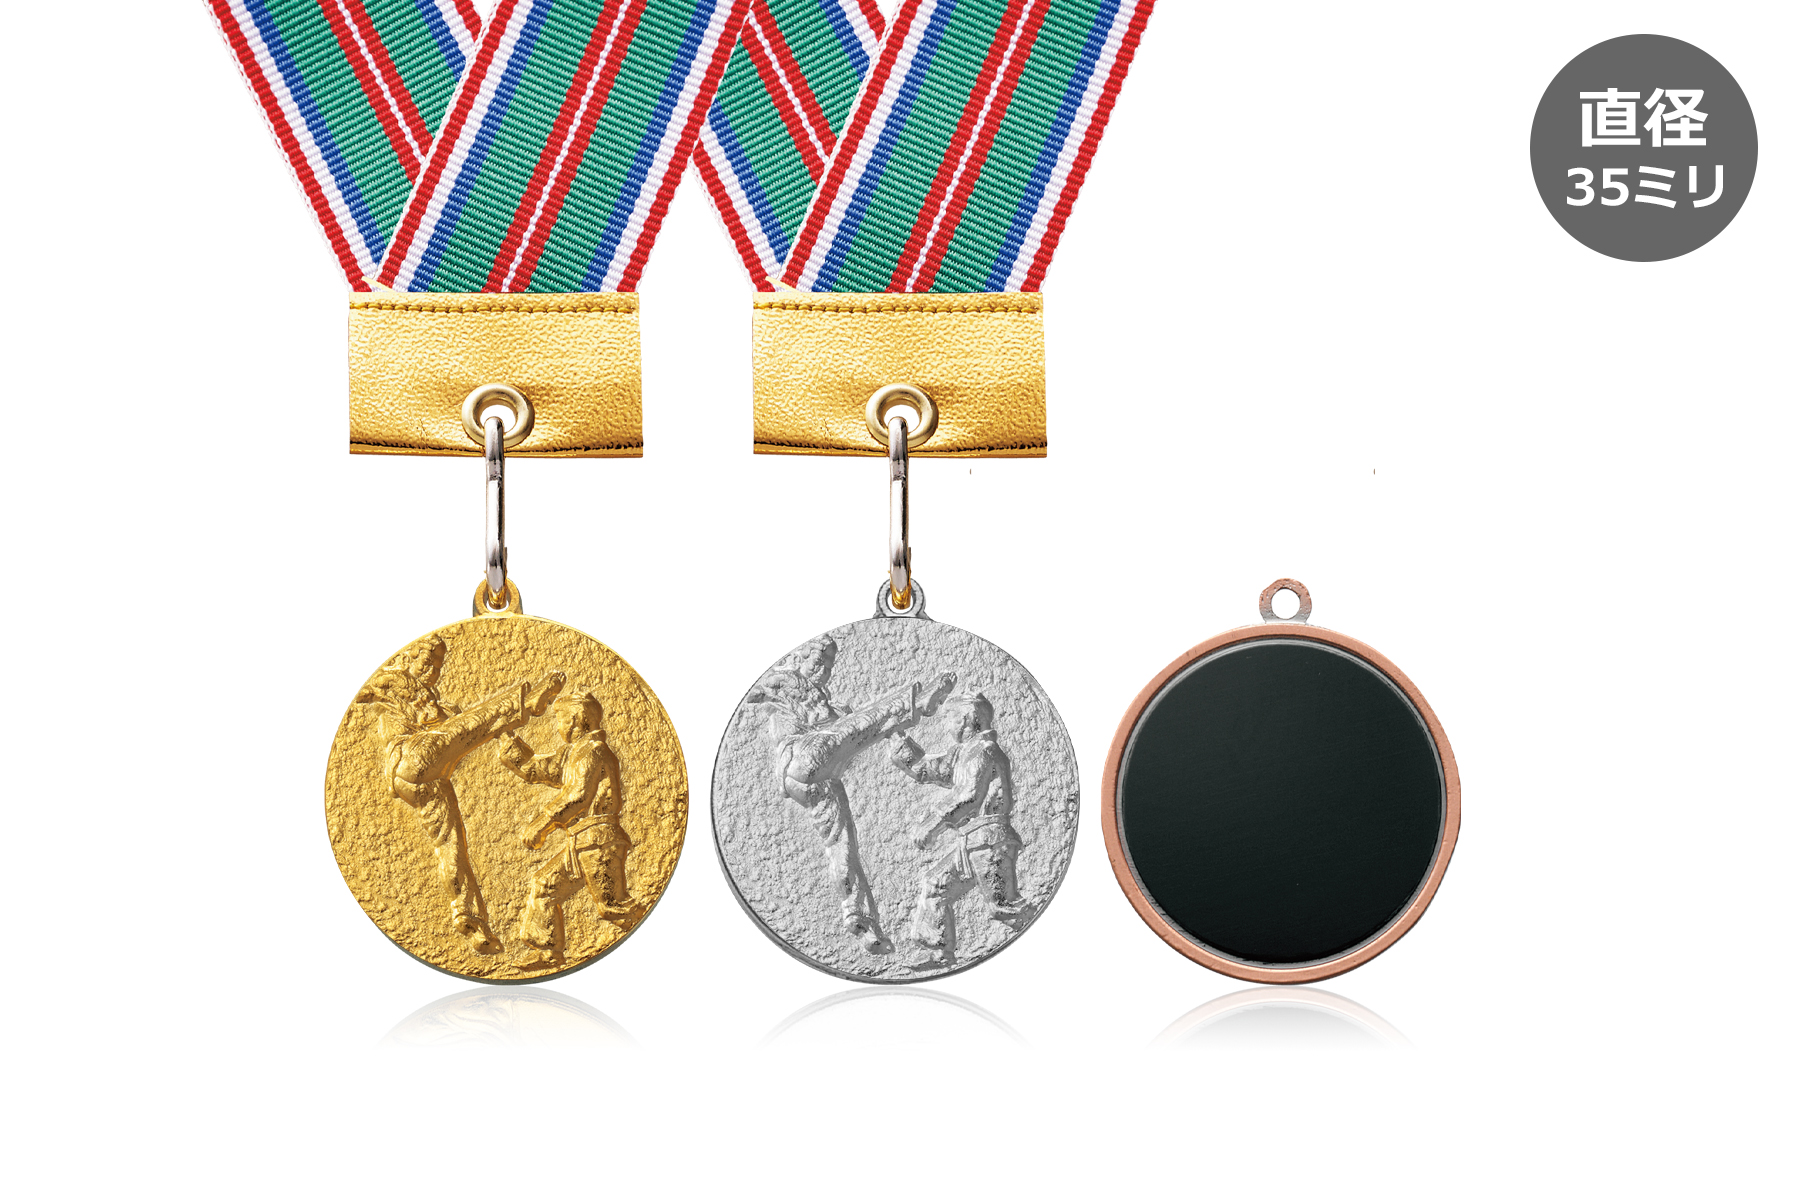 空手大会や卒業記念品に人気の表彰メダル JW-35E-karate